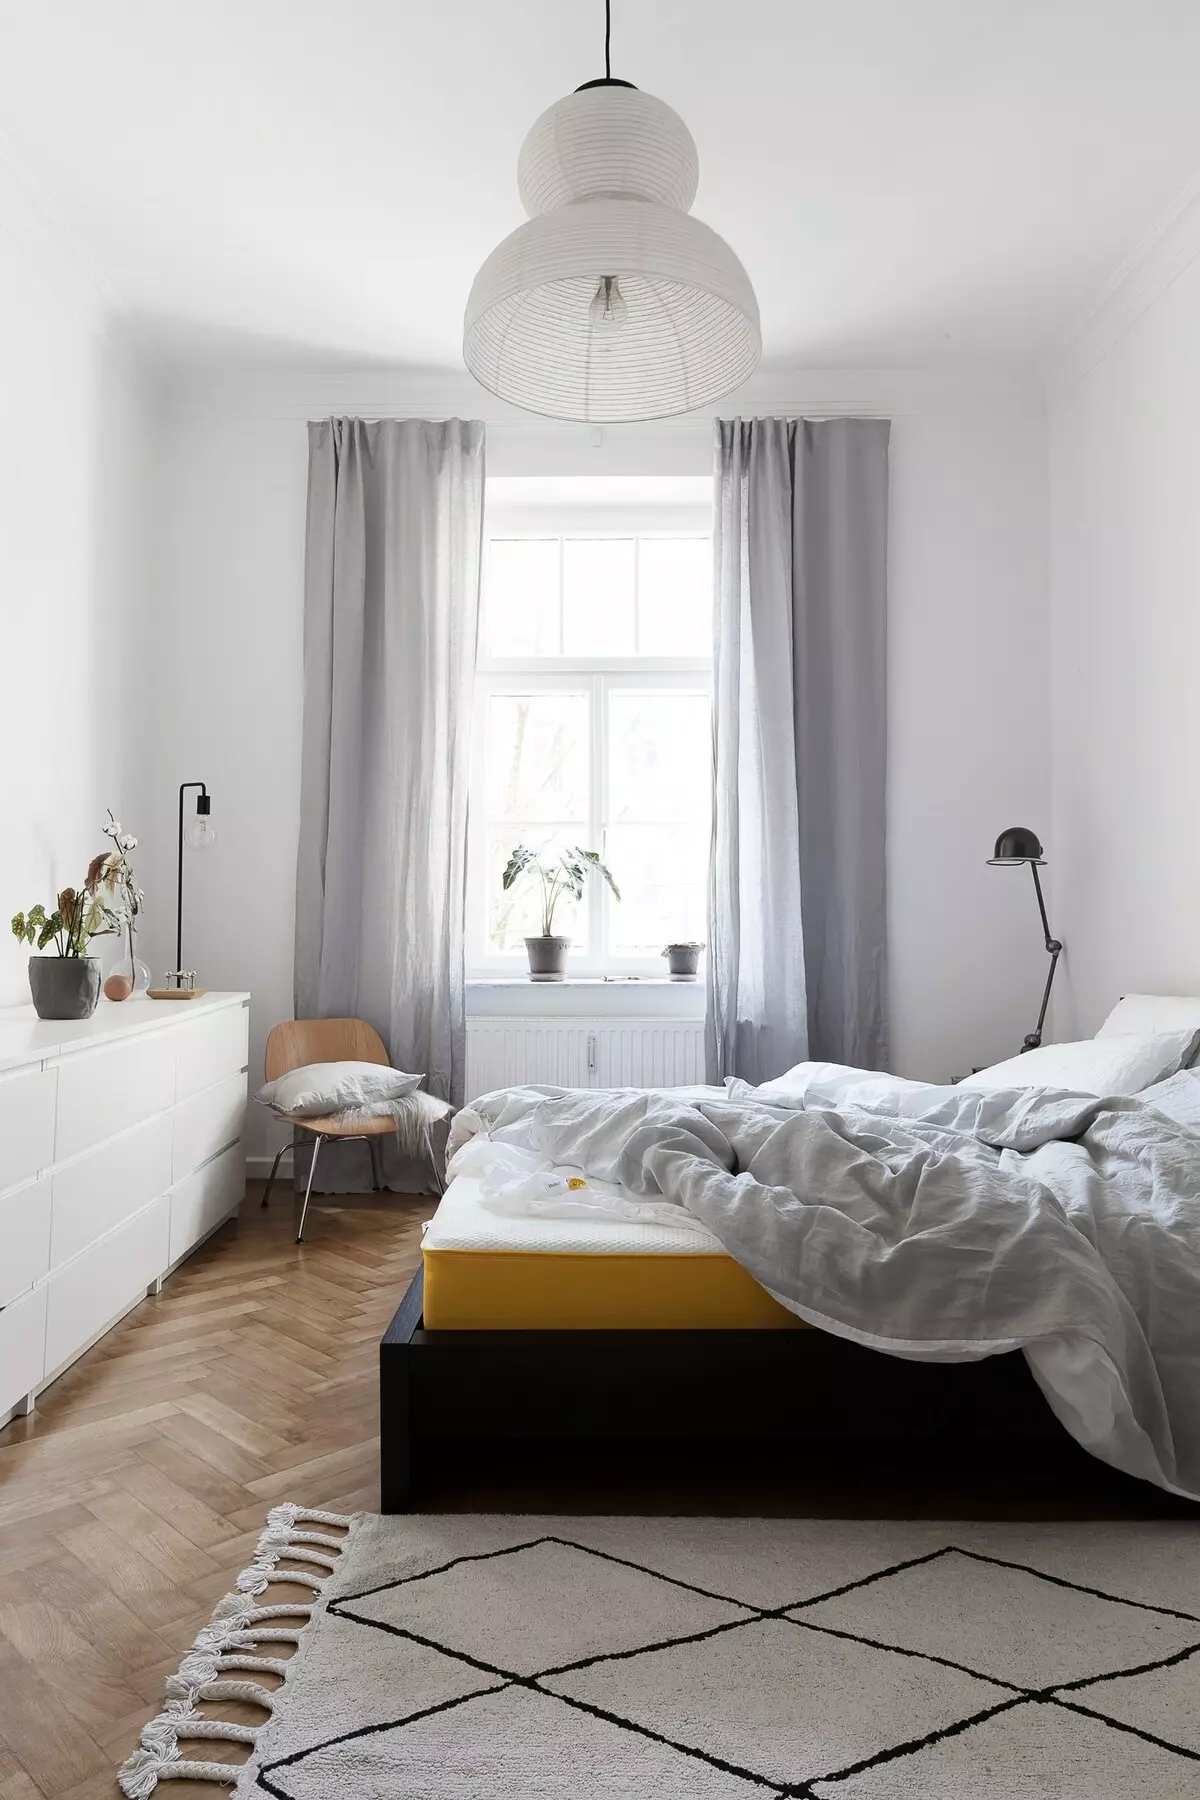 Interior elegant de la habitació lleugera amb accents foscos Foto Scandinavian Style